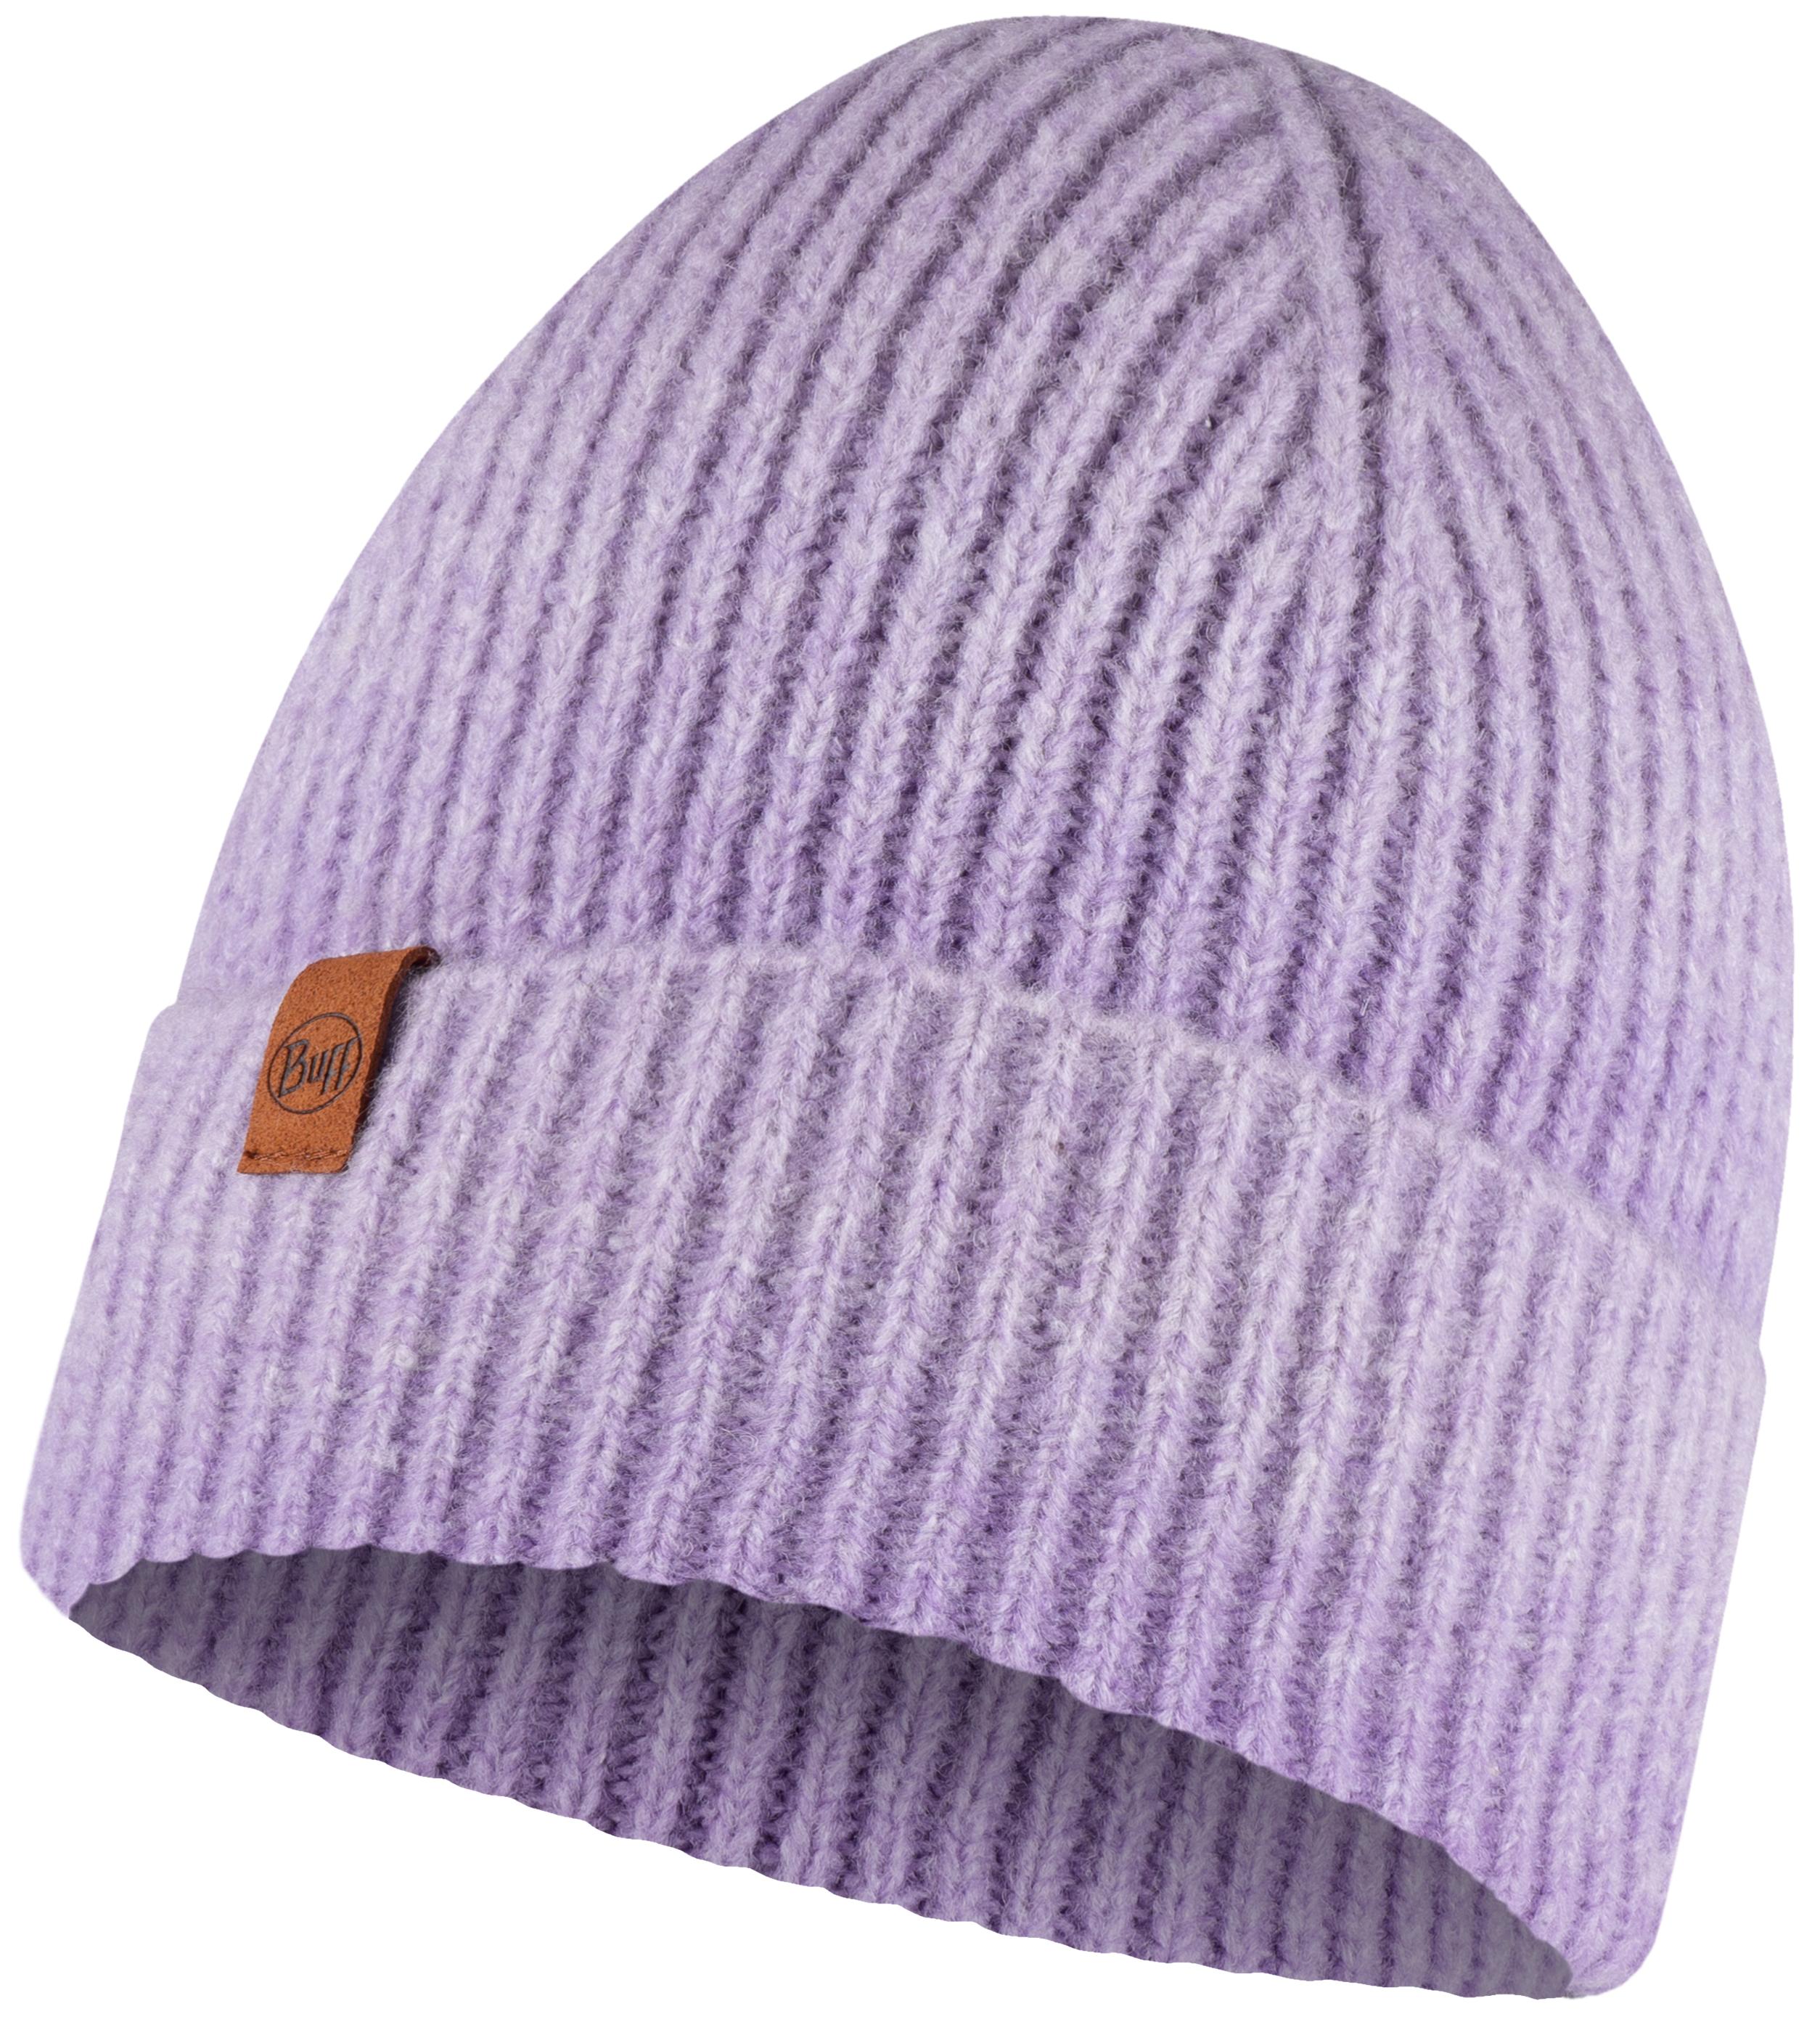 Шапка бини унисекс Buff Knitted Hat Marin фиолетовая, one size